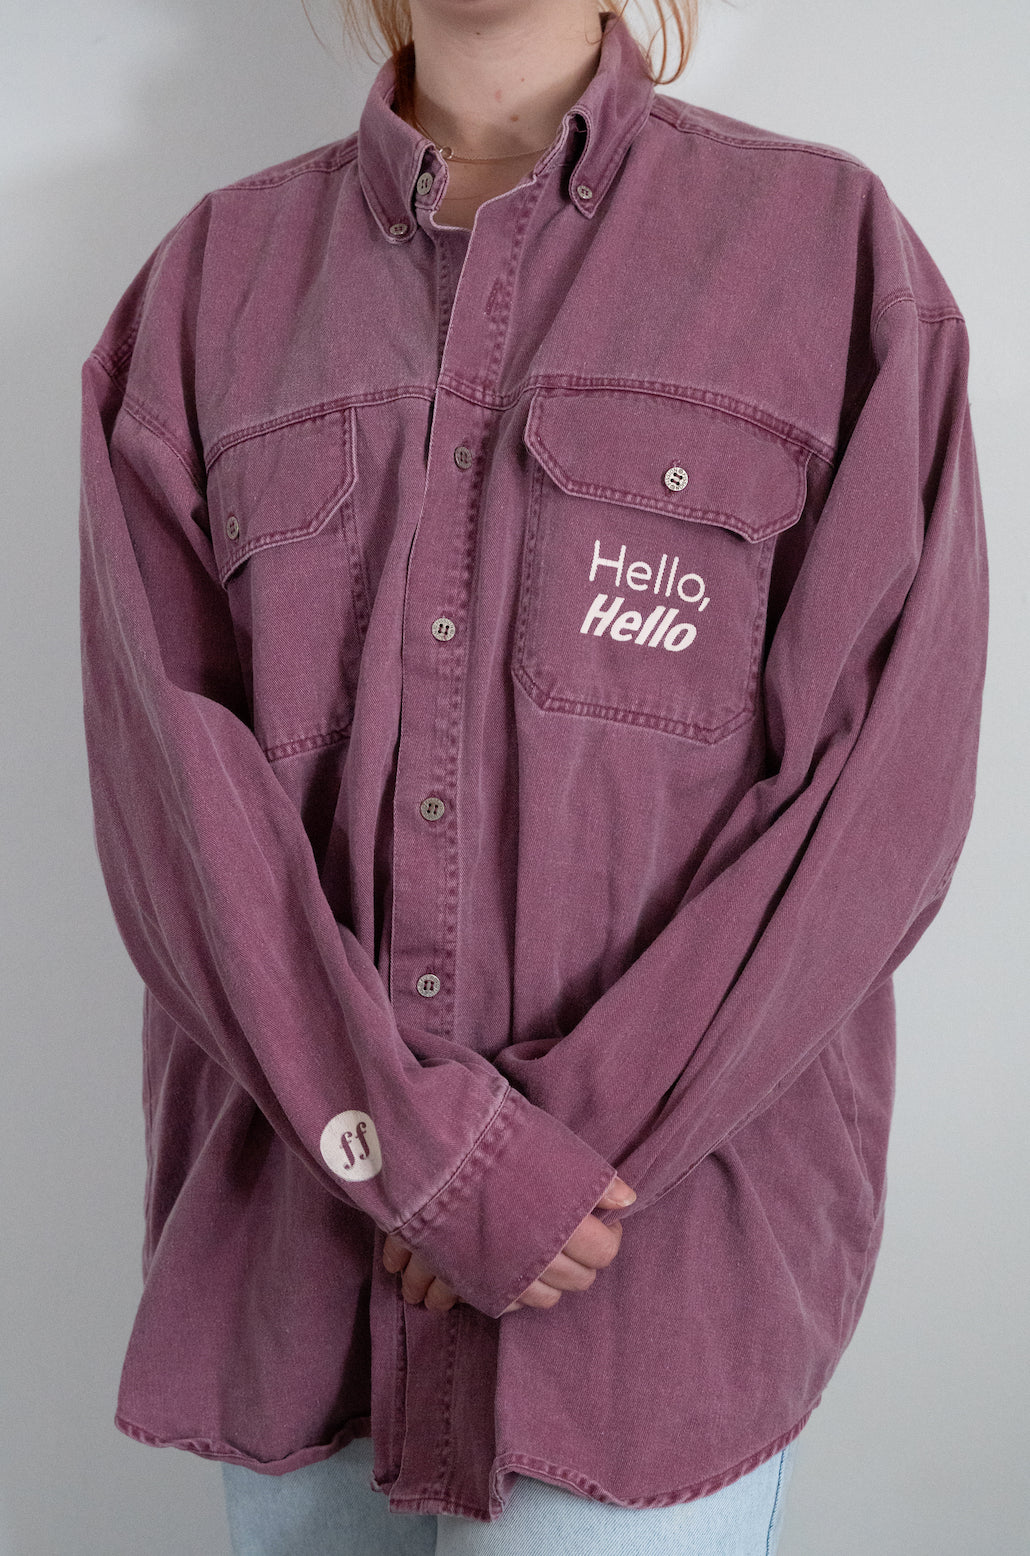 Hello, Hello Pink Denim Button Up - Size XL